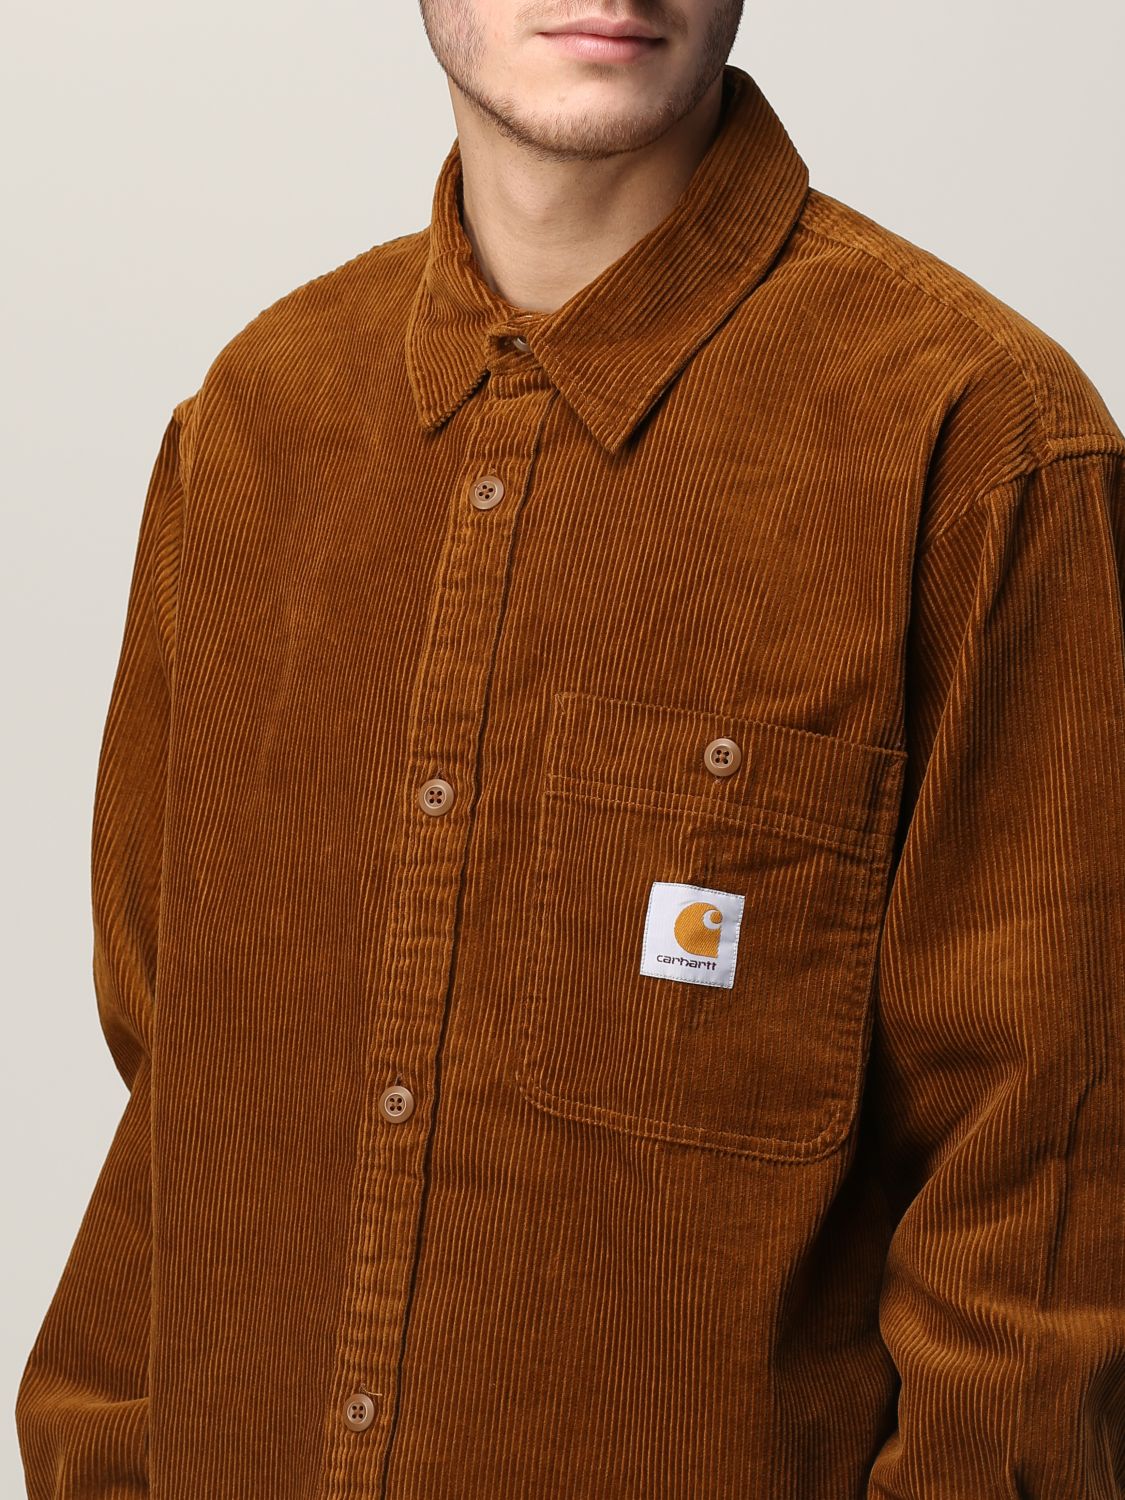 Shirt Carhartt Wip: Carhartt Wip shirt for men brown 3